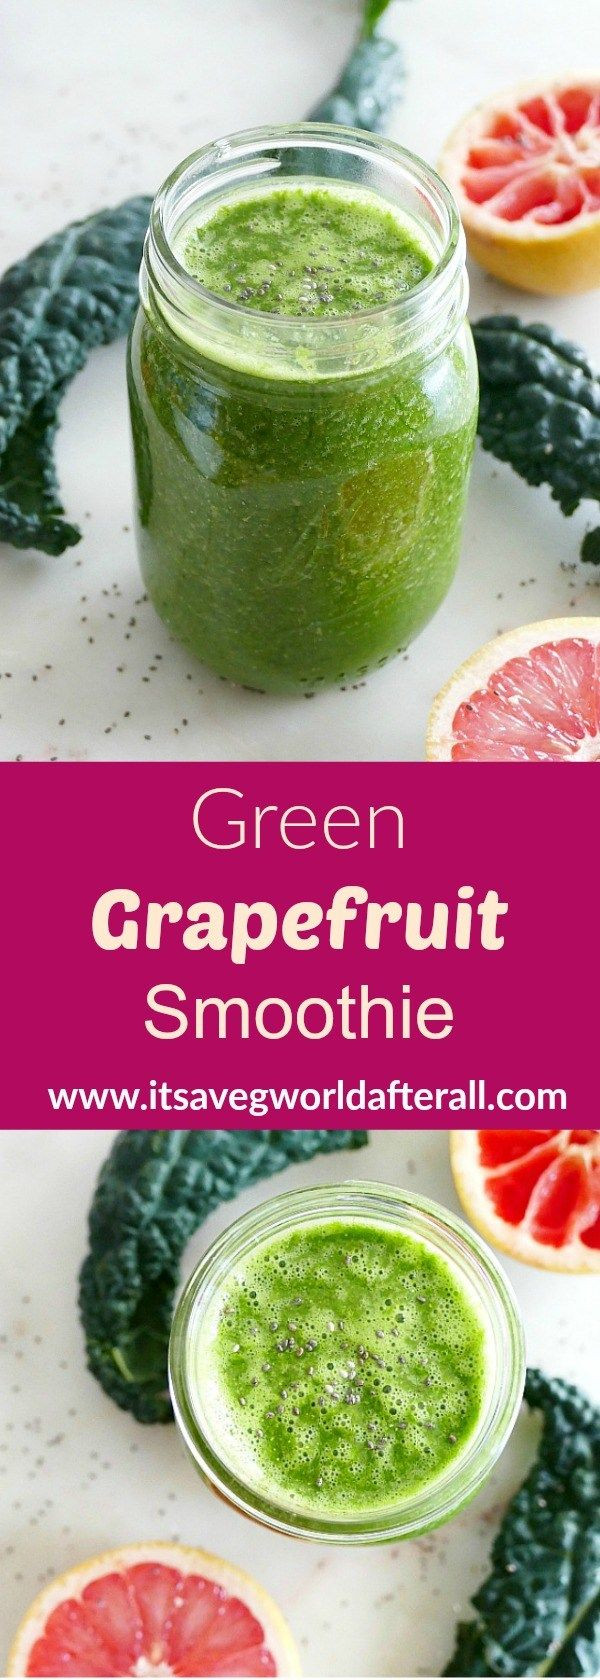 Grapefruit Smoothie Recipes
 Green Grapefruit Smoothie Recipe